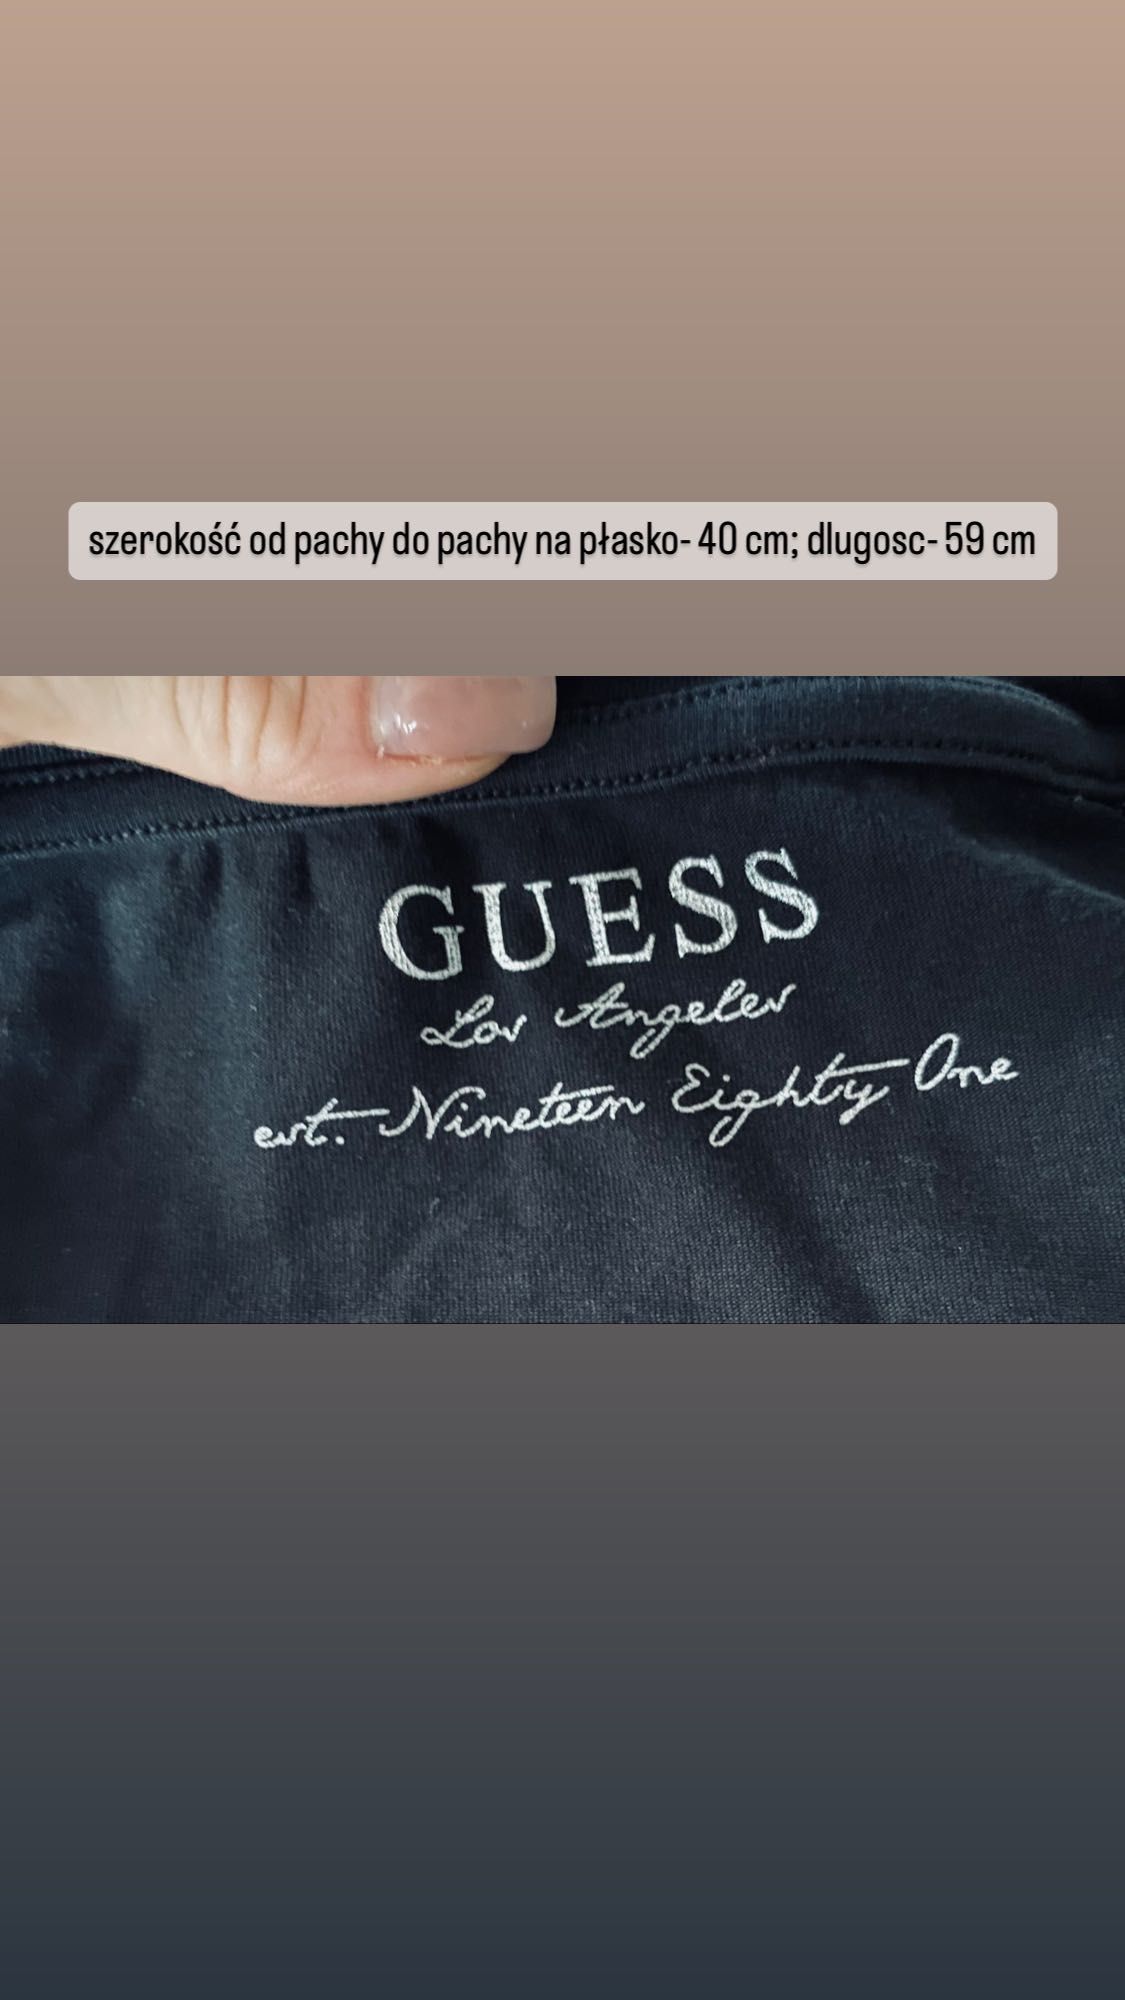 T-shirt krótki rękaw Guess XS/S czarny różowe napisy nadruk